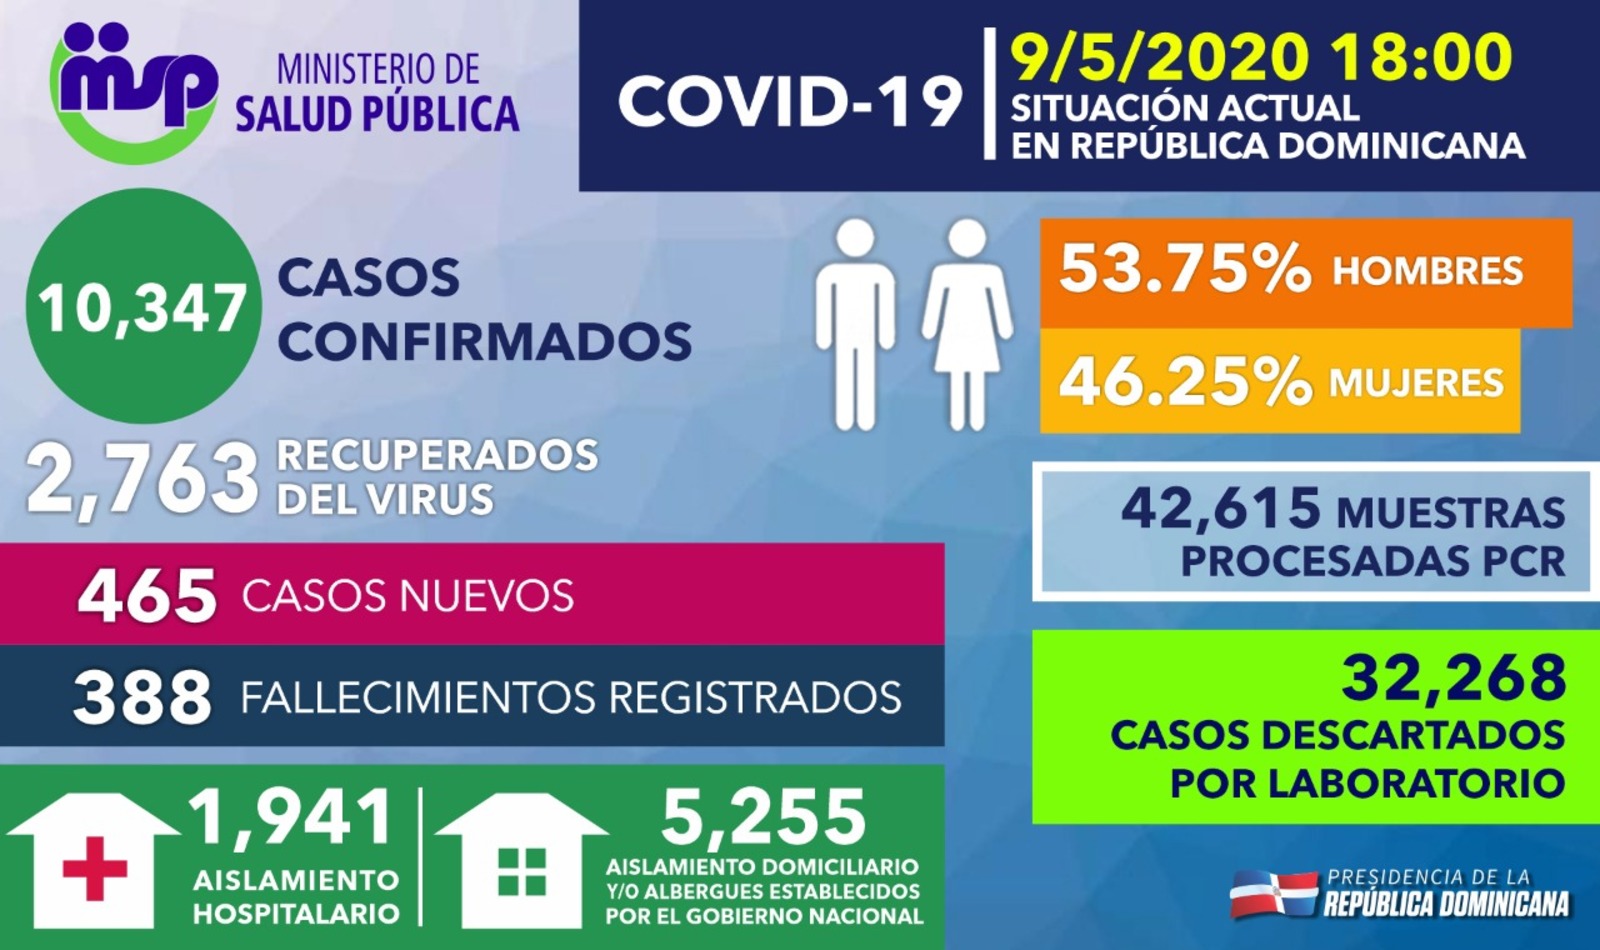 REPÚBLICA DOMINICANA: Ministro de Salud explica aumento casos nuevos COVID-19 responde a mayor capacidad diagnóstica de RD; se registran 2,763 recuperados